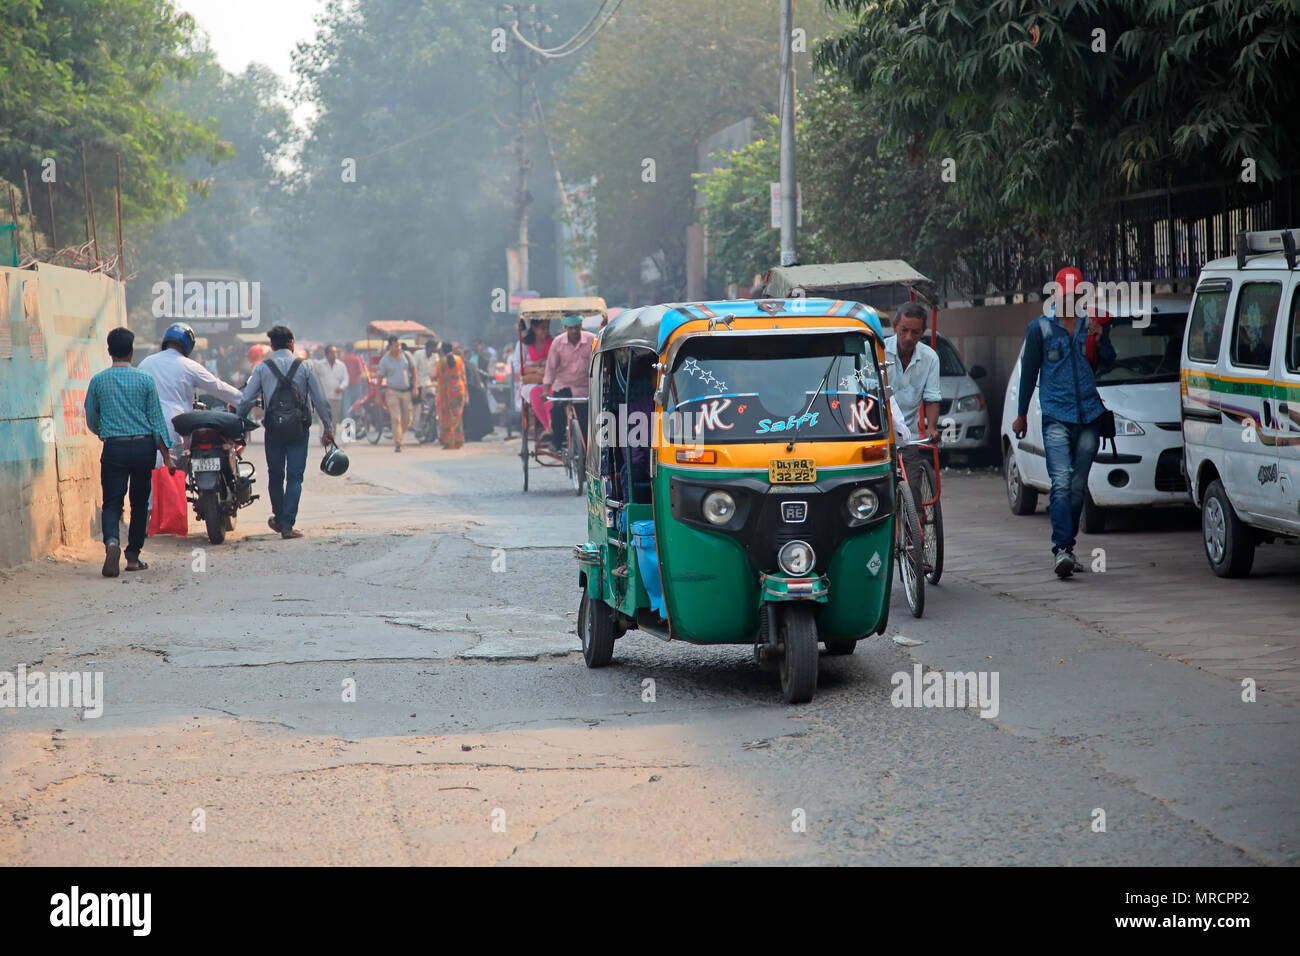 Delhi, India - 20 Novembre 2015:-Tuk Tuk colorati veicoli e pedoni in un affollato traffico di Delhi con smog visibile dell'inquinamento atmosferico Foto Stock